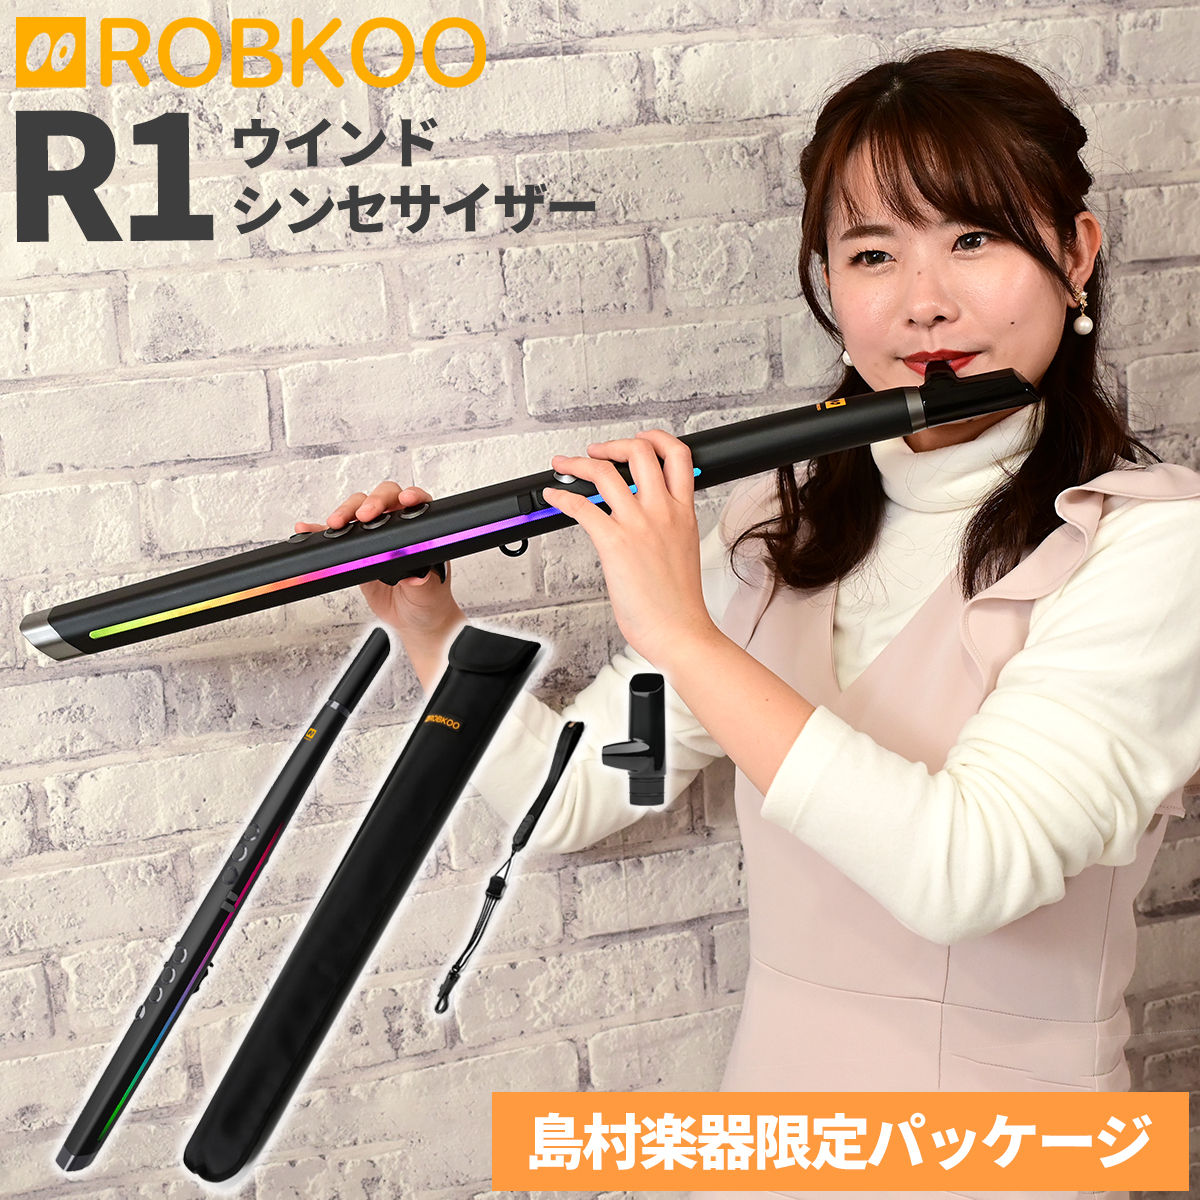 新しい電子管楽器！robkoo R1